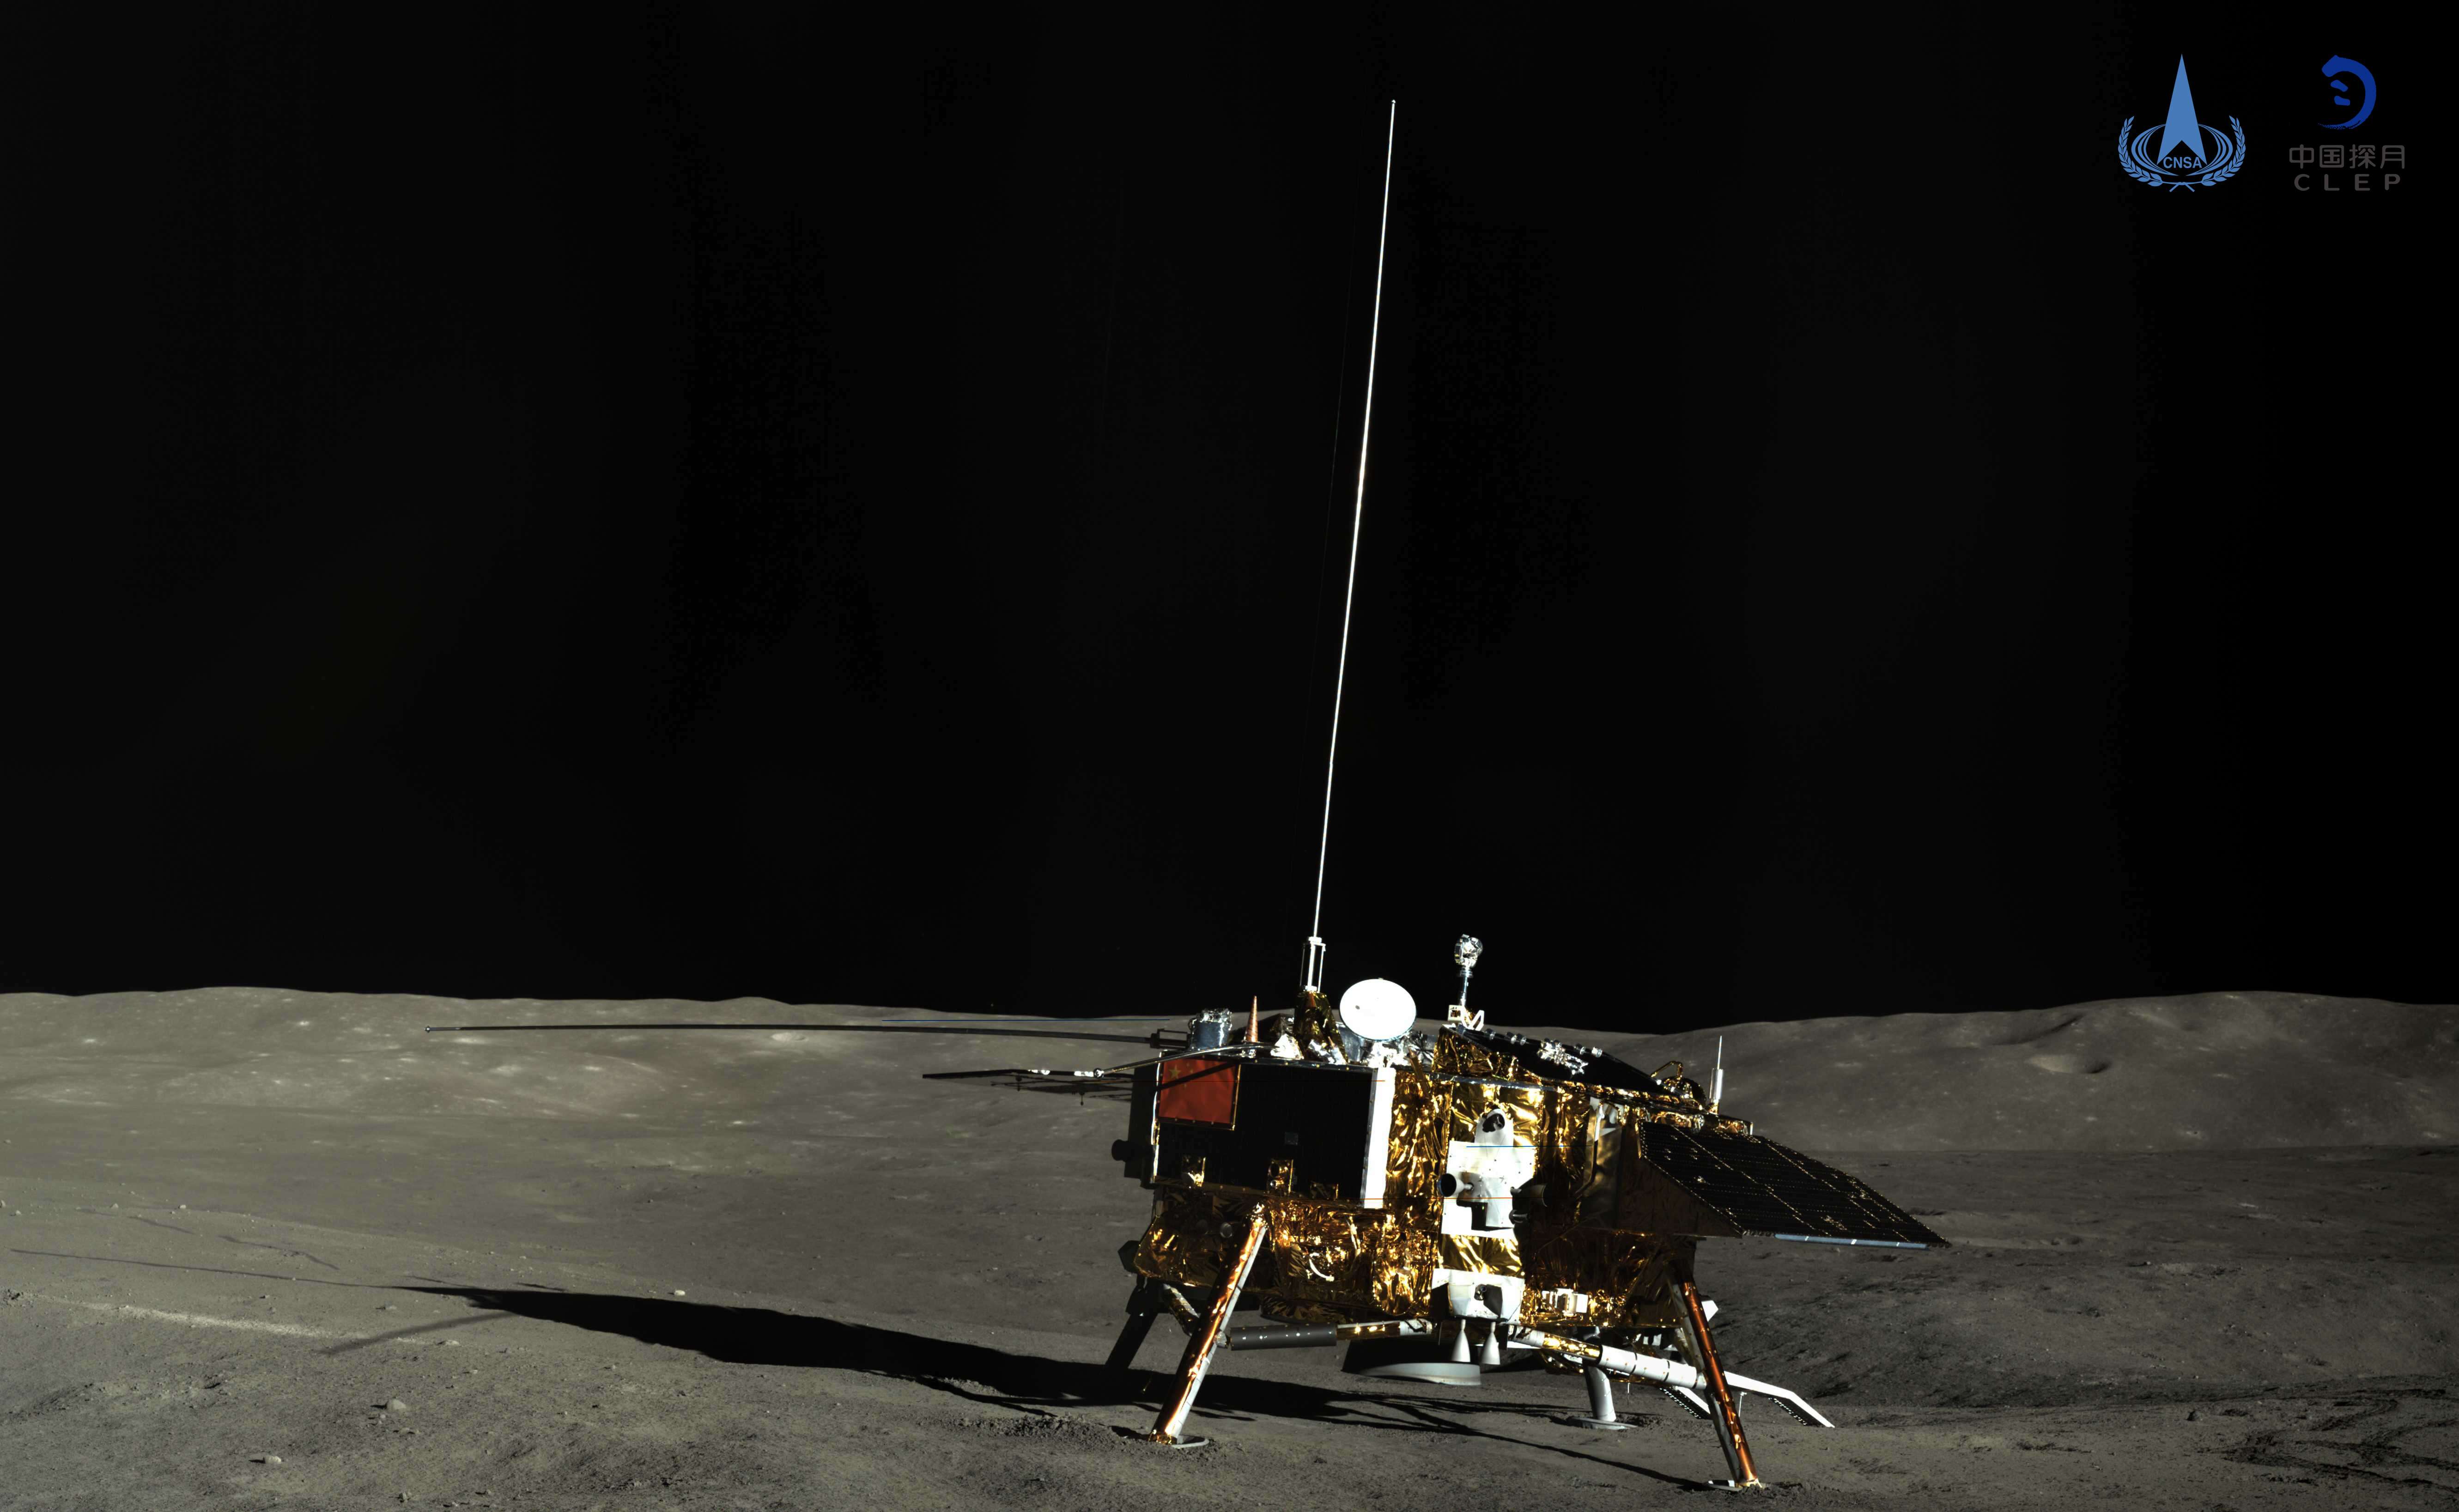 嫦娥四号再次月夜休眠 第二月昼工作正常